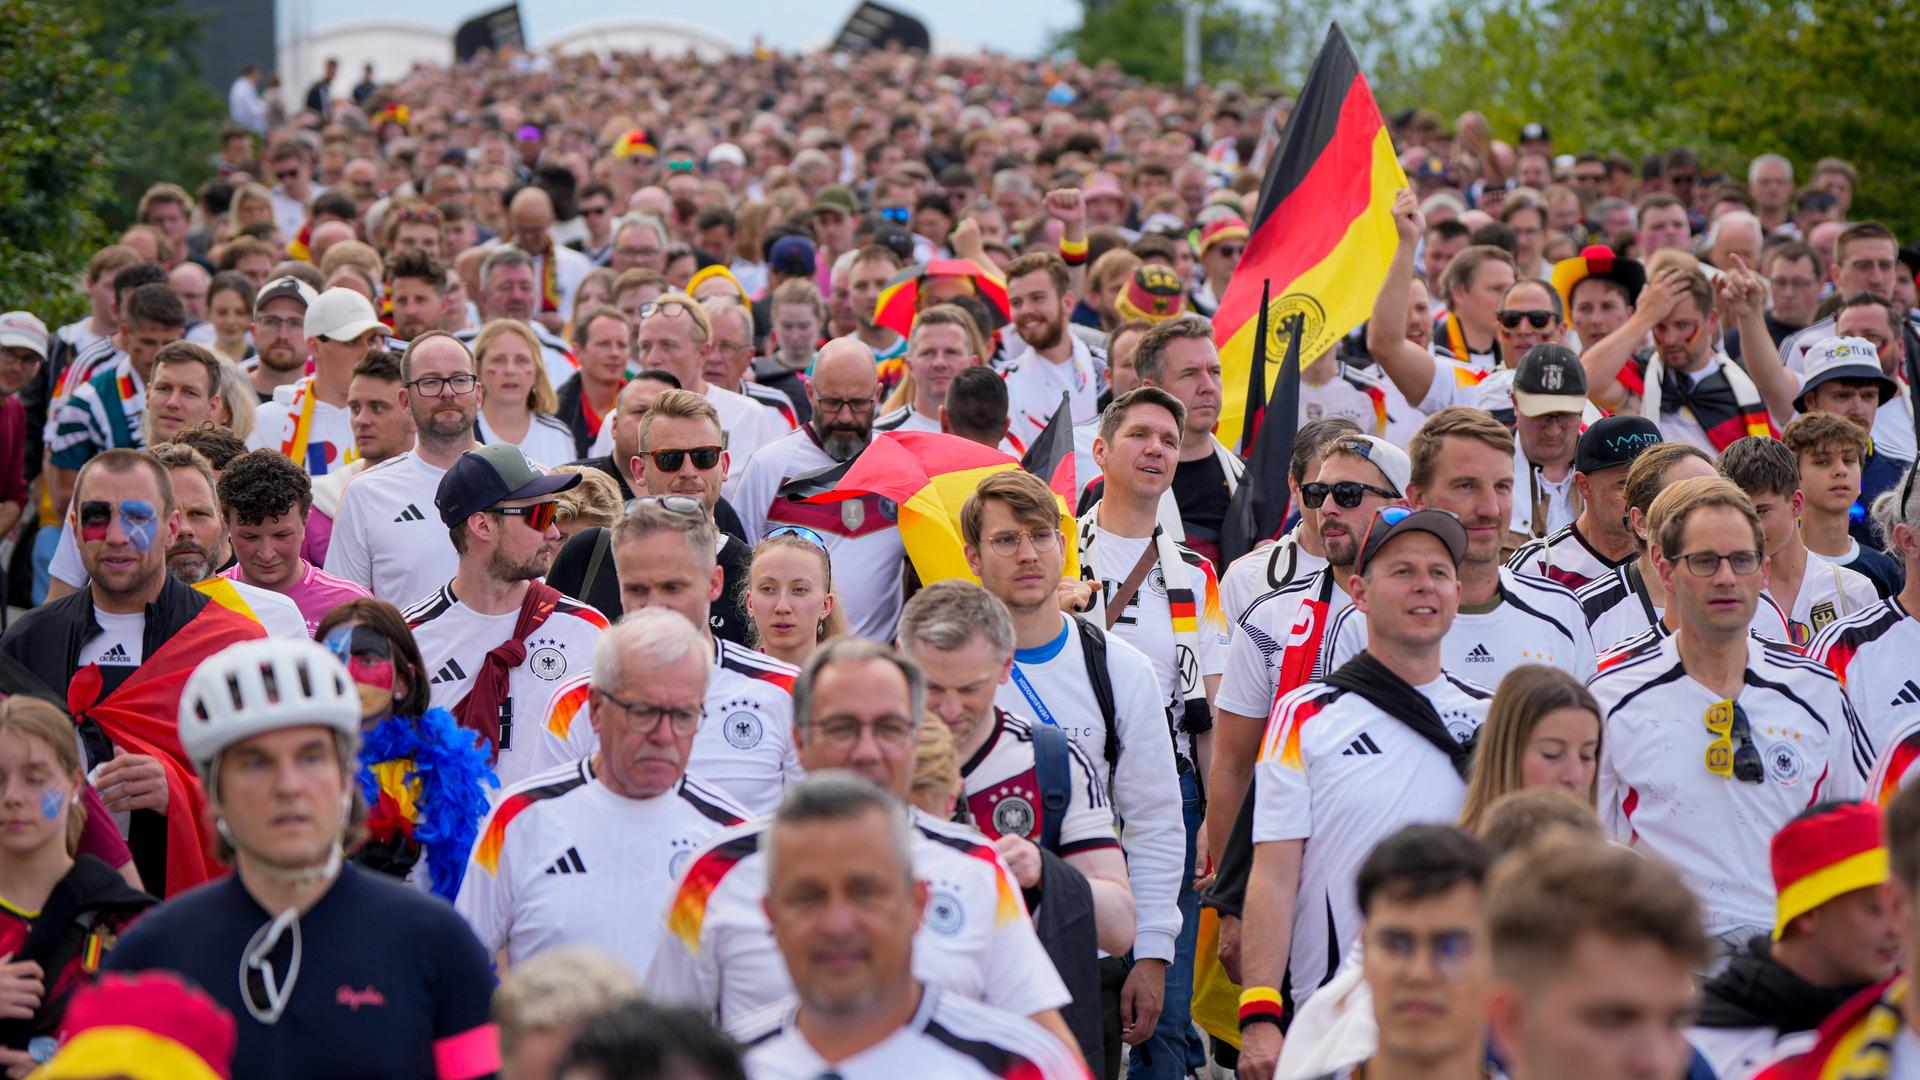 Mit Fahnen und Trikot ziehen deutsche Fußballfans ins Stadion zum ersten Spiel bei der Herren-Europameisterschaft gegen Schottland.